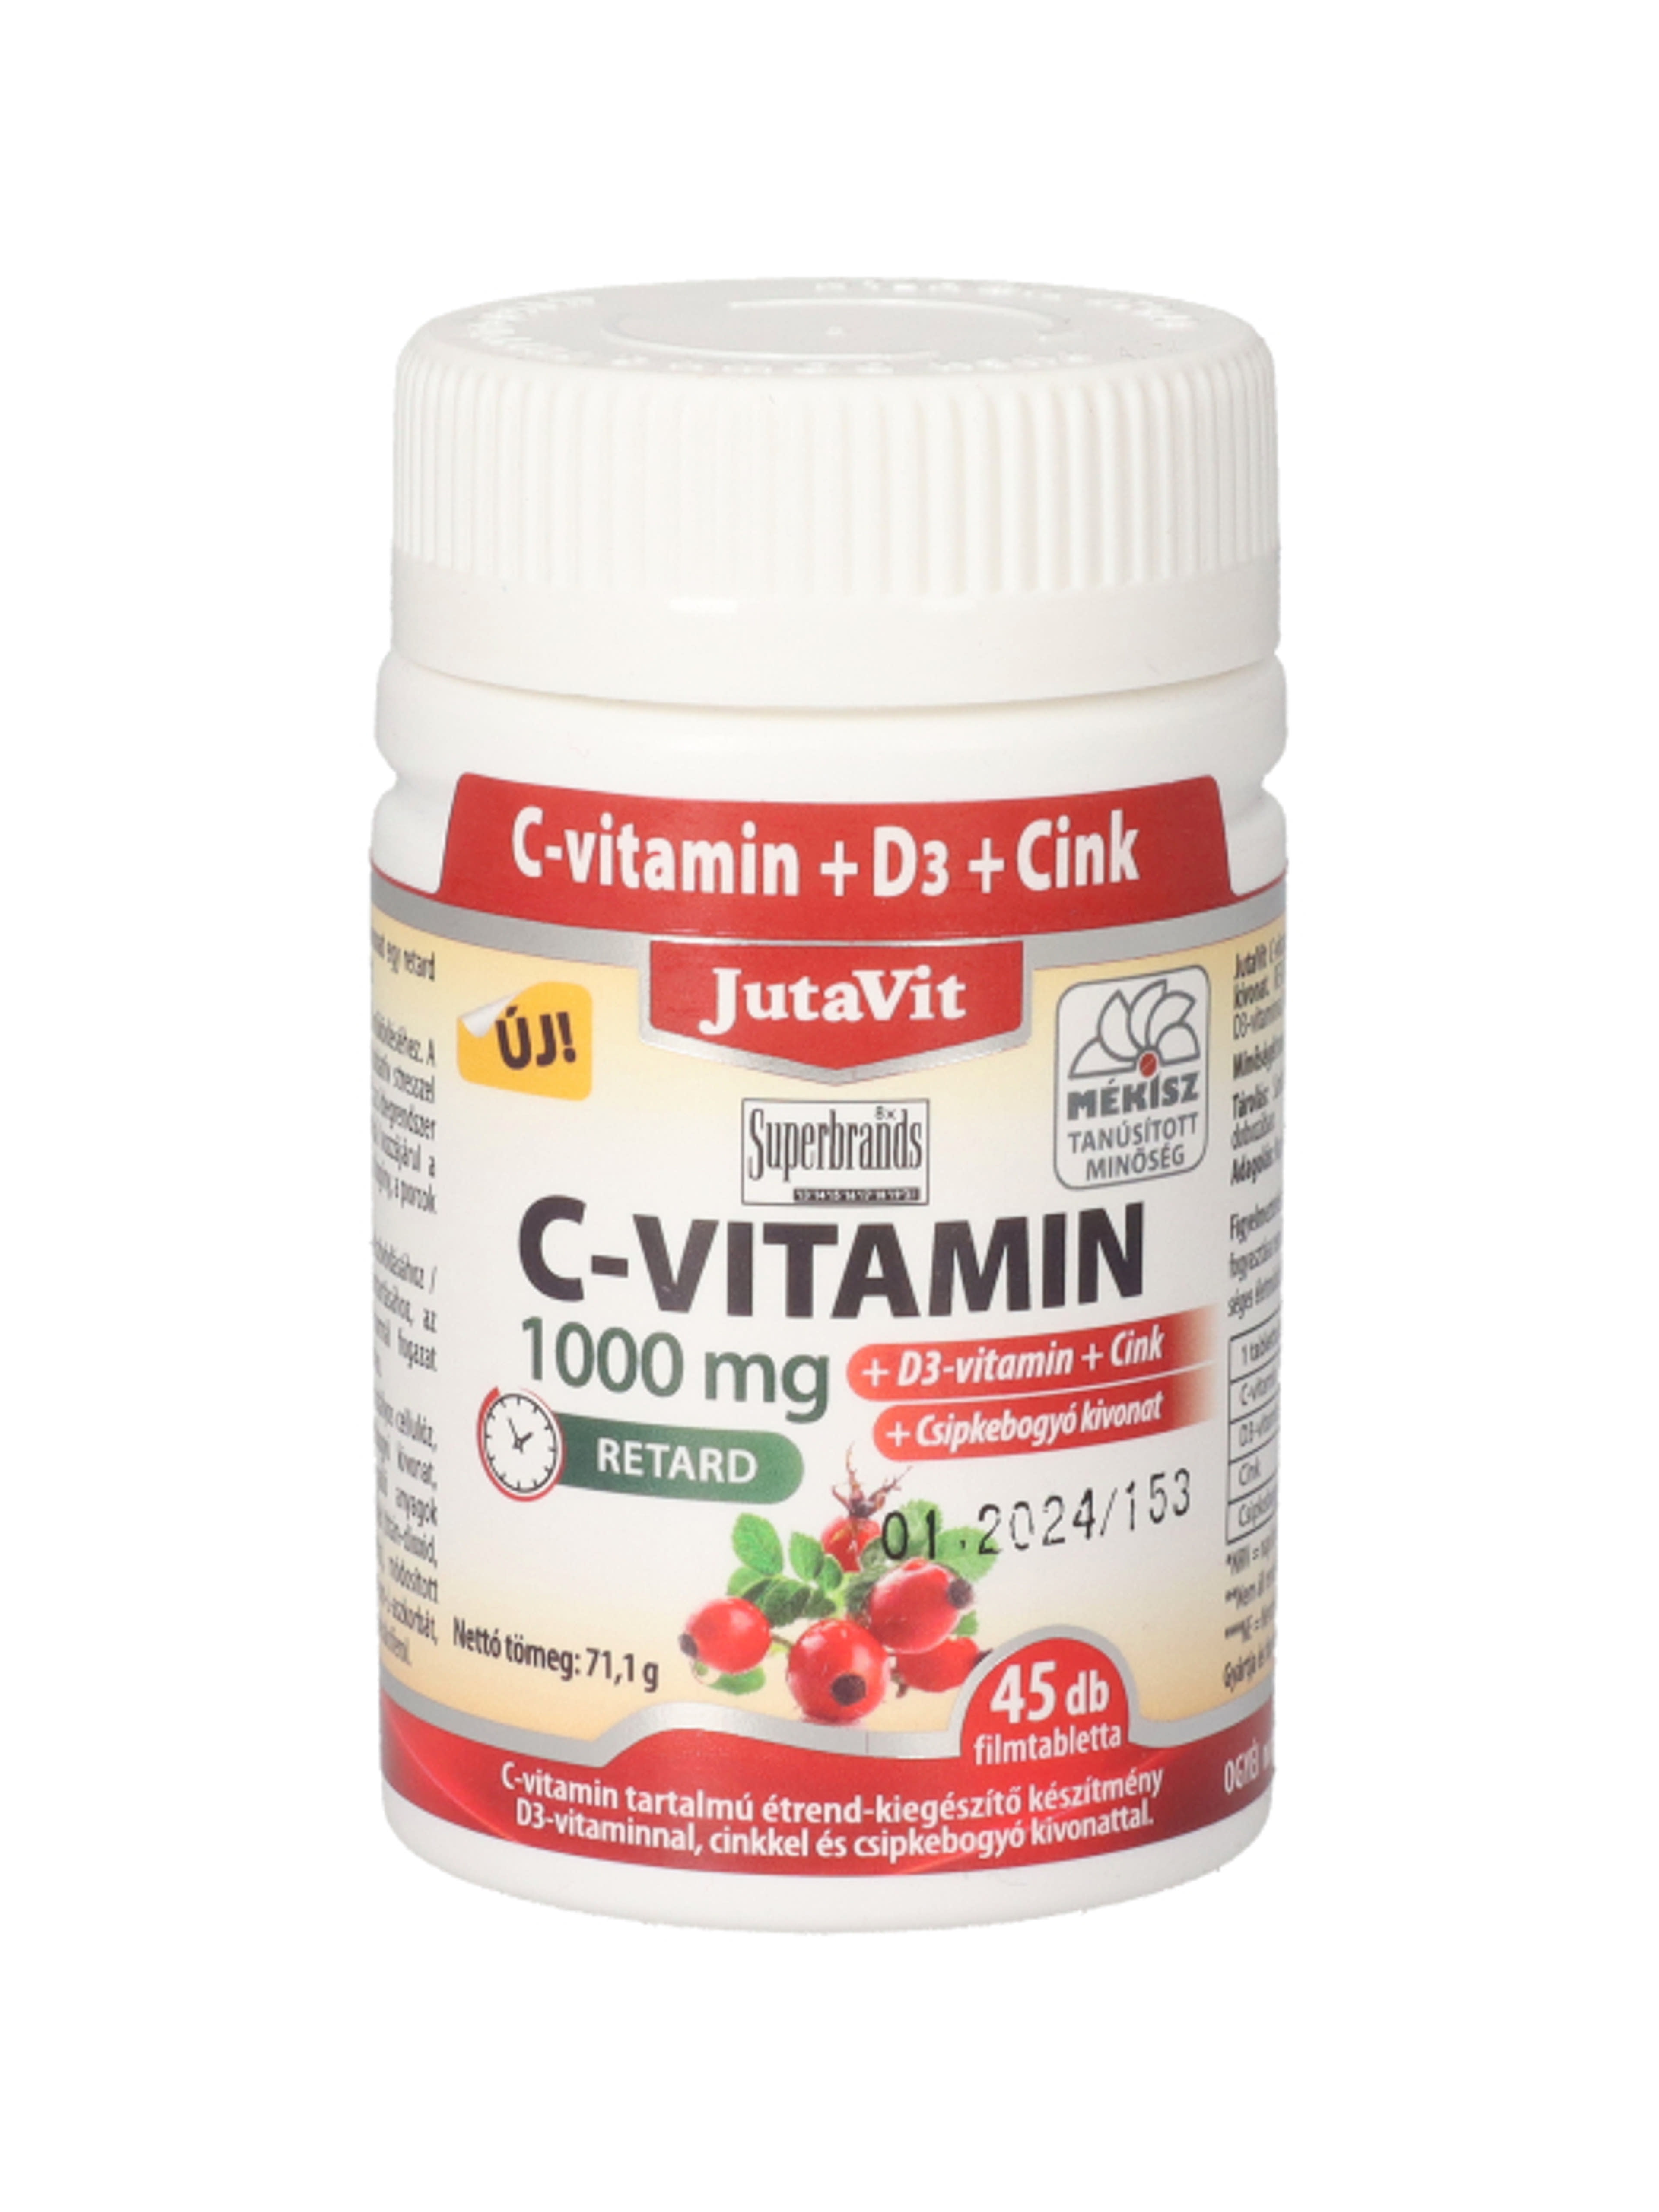 JutaVit C-vitamin 1000 mg + D3 + Cink + csipkebogyó étrend-kiegészítő filmtabletta - 45 db